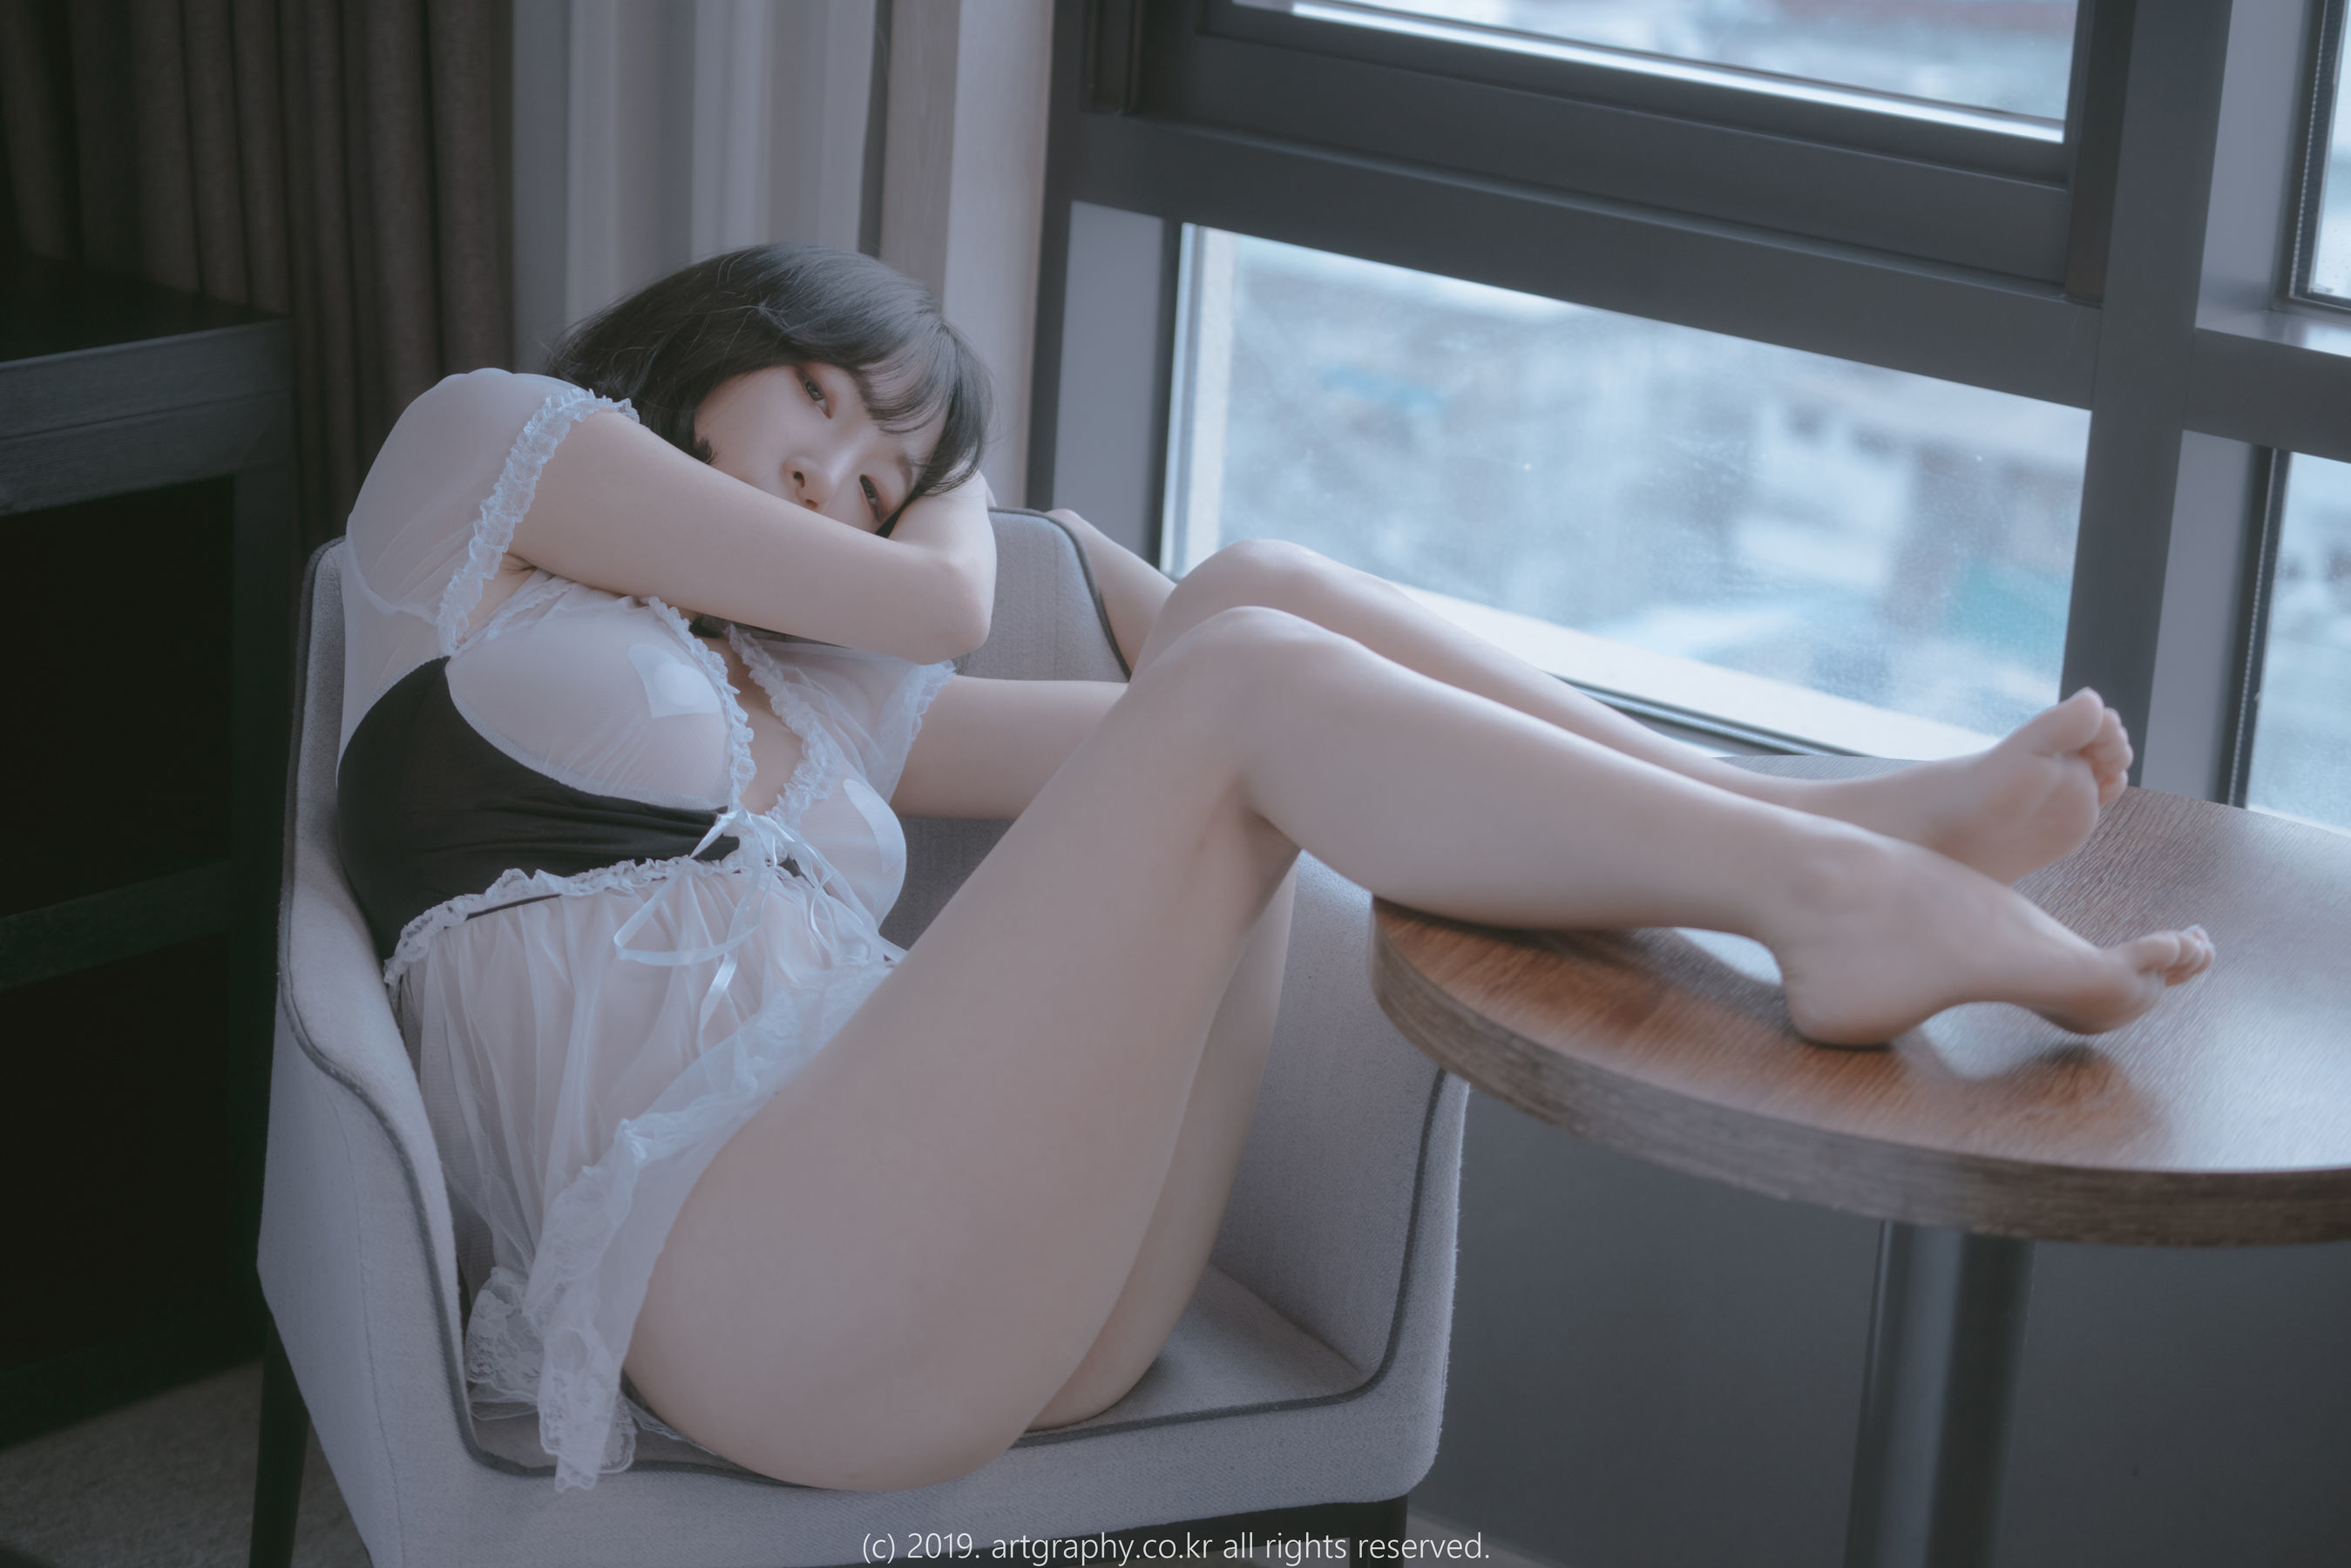 [ARTGRAVIA] VOL.069 巨乳少女姜仁卿 - 透视睡衣+古典红色睡袍